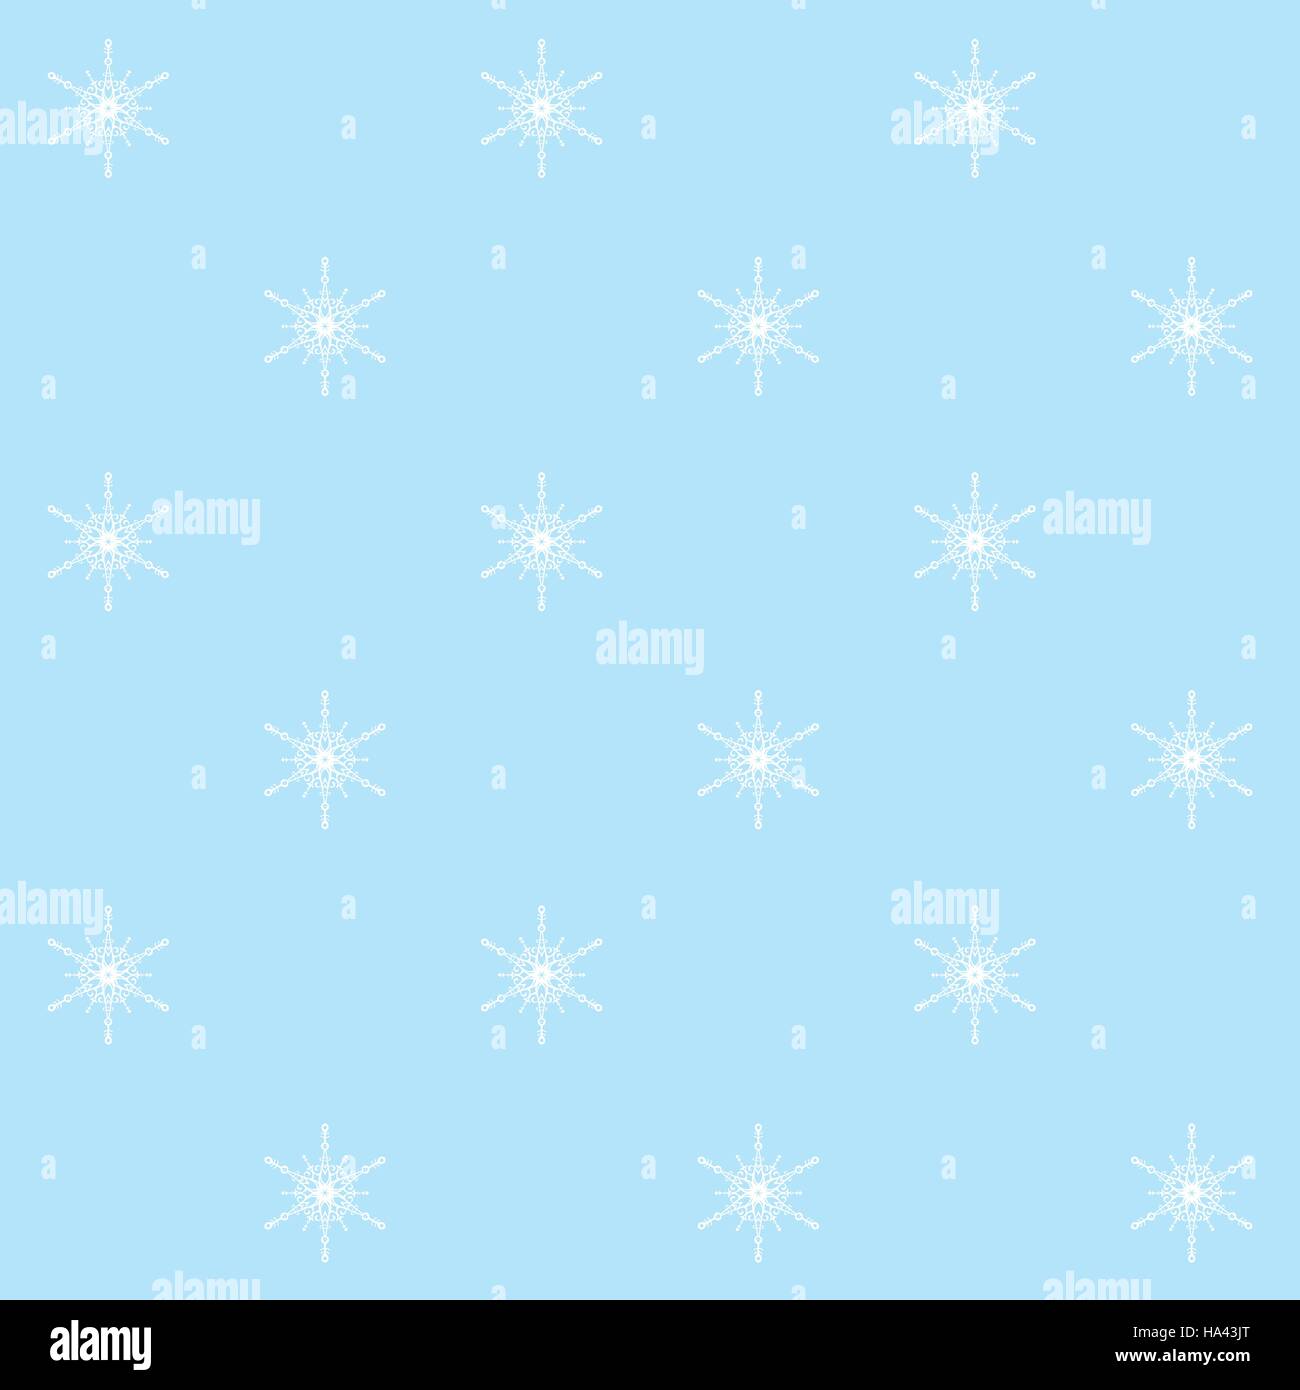 Natale seamless pattern con i fiocchi di neve su sfondo azzurro, colori pastello. Illustrazione Vettoriale